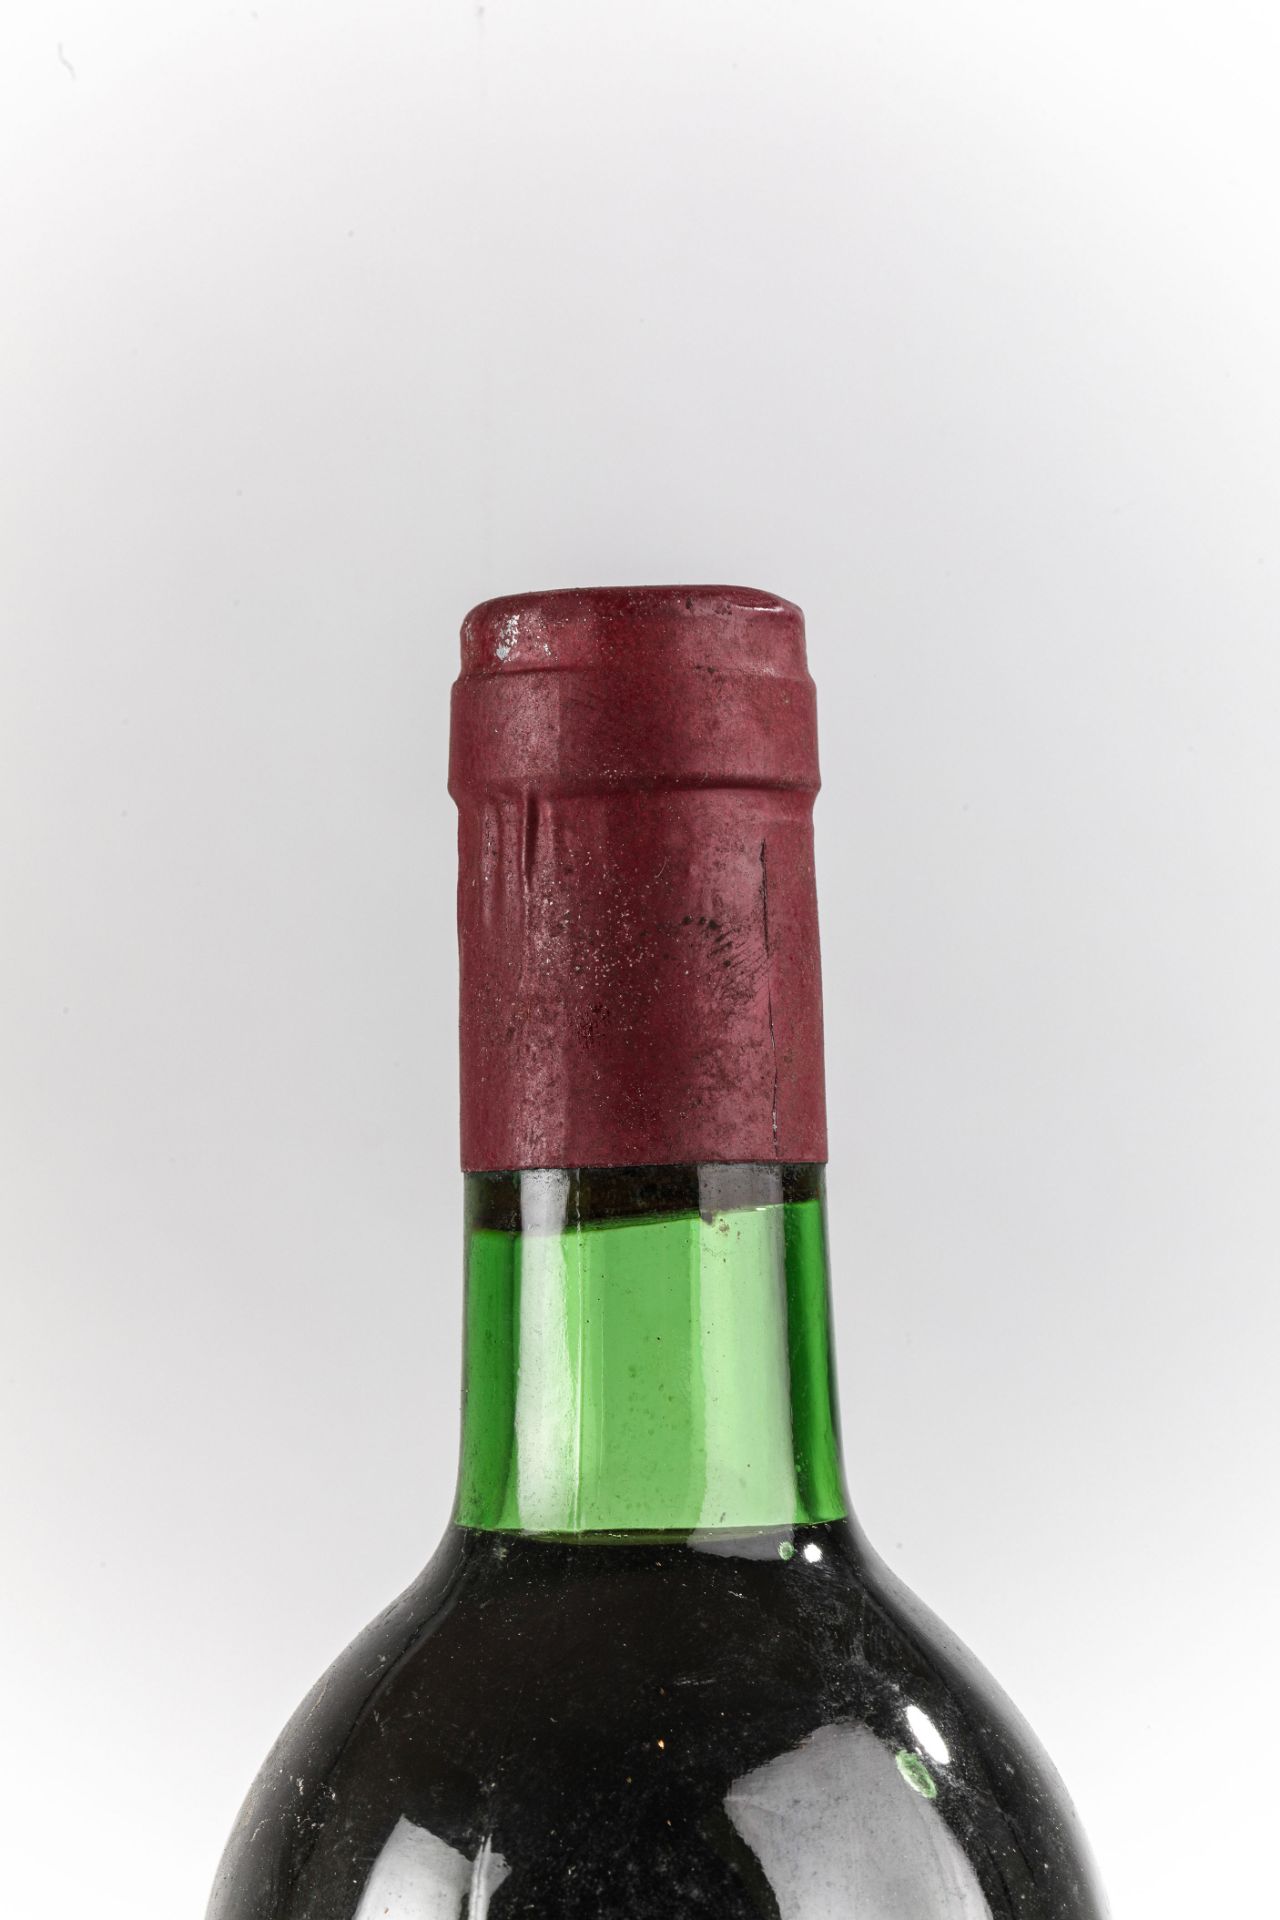 VEGA SICILIA UNICO. 1972. Ribera del Duero. Bouteille N°18333 sur production 66 500 bouteilles. - Image 3 of 4